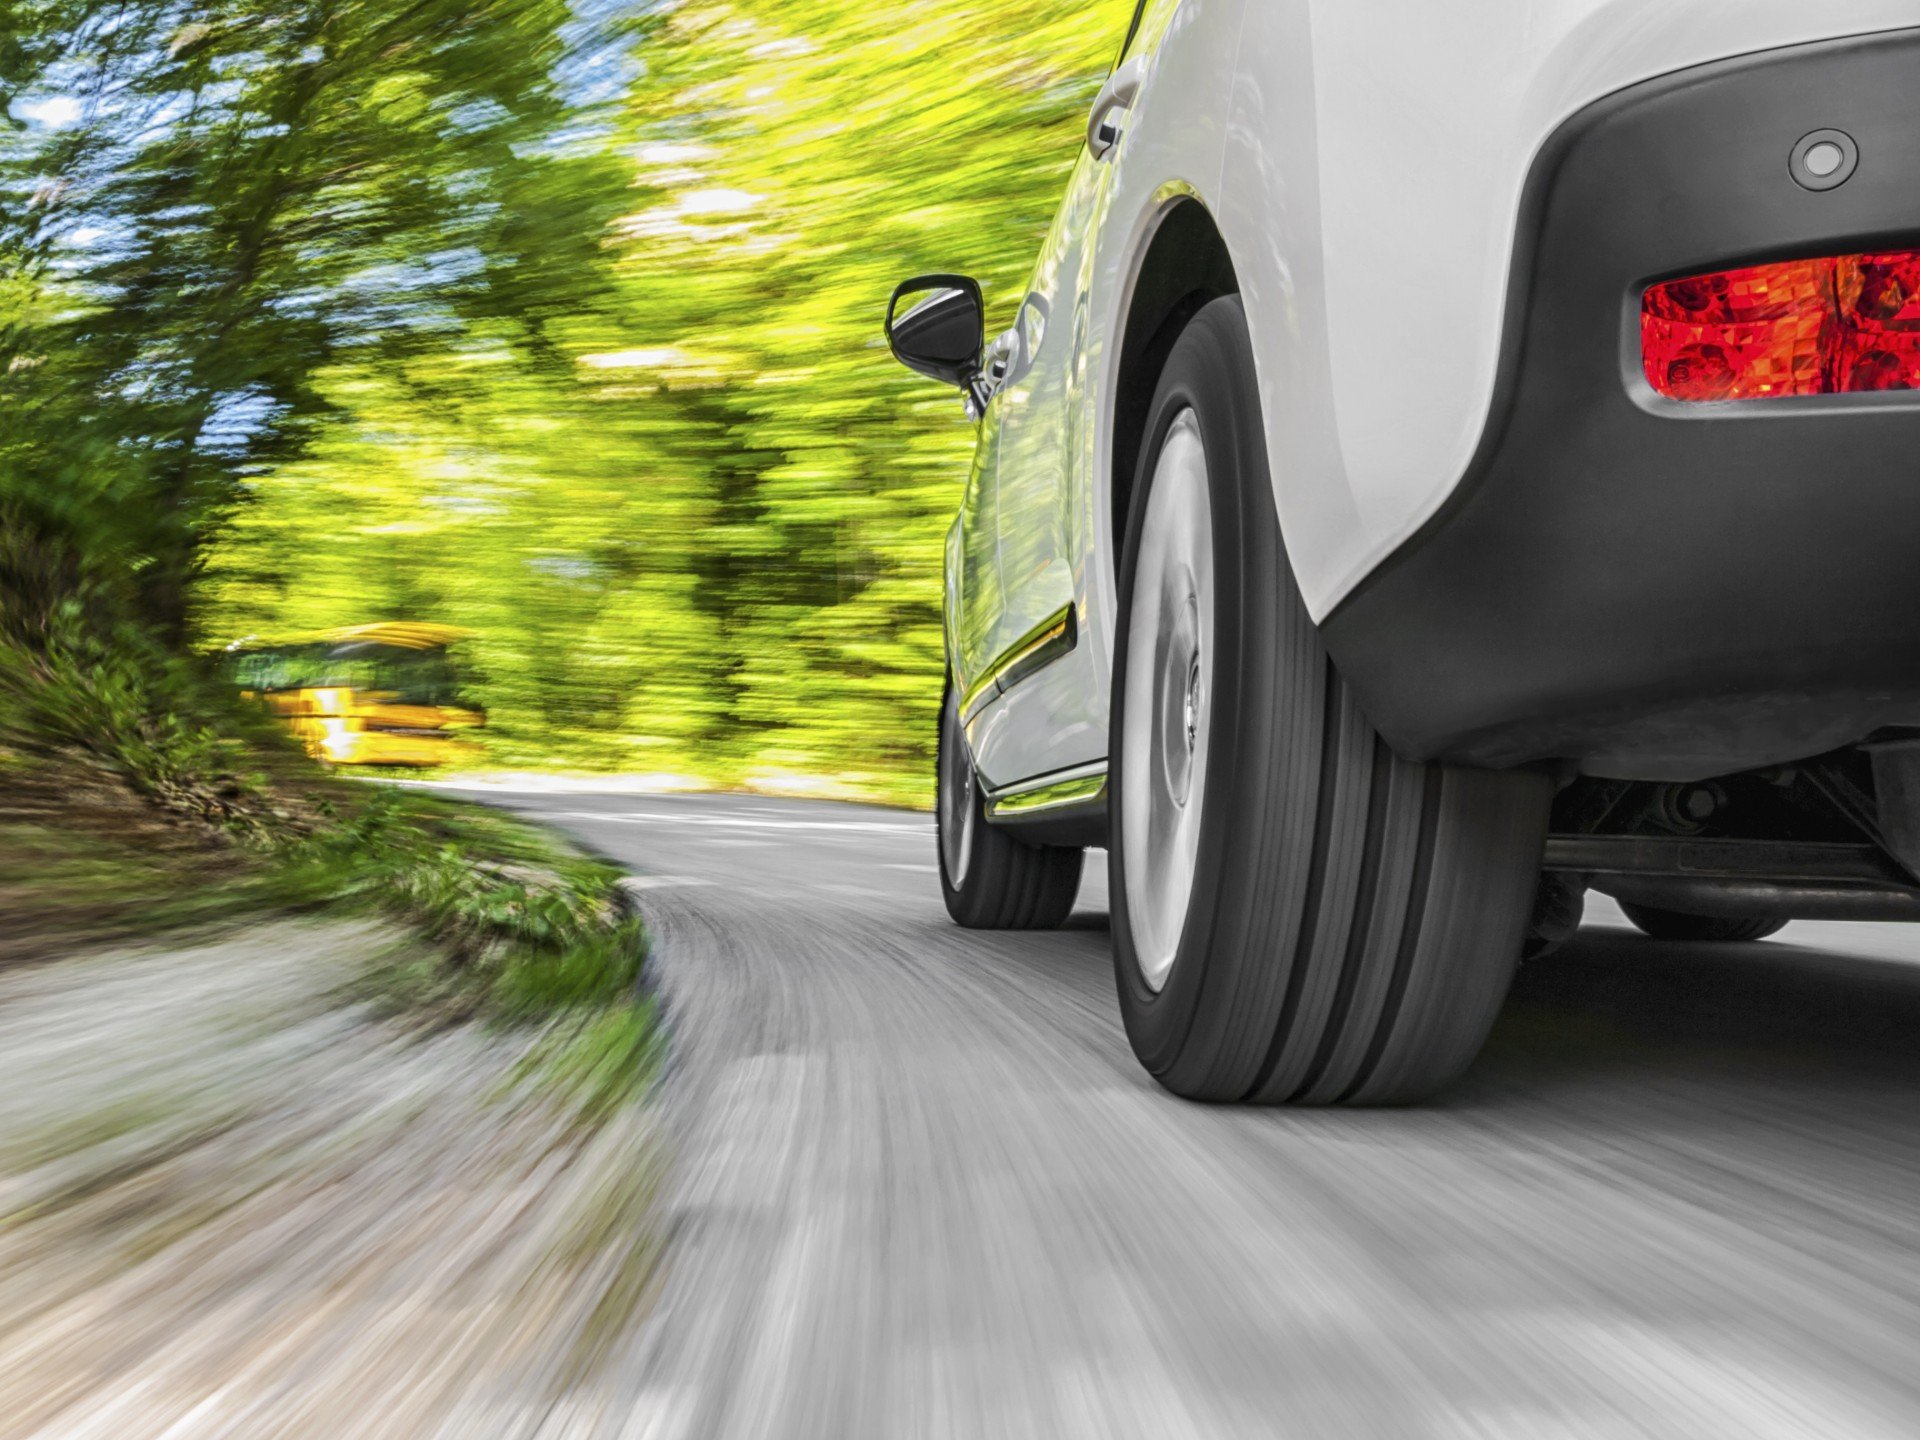 Speeding, Motoring Solicitor, Speeding, Drink Driving - Moore Motoring Law